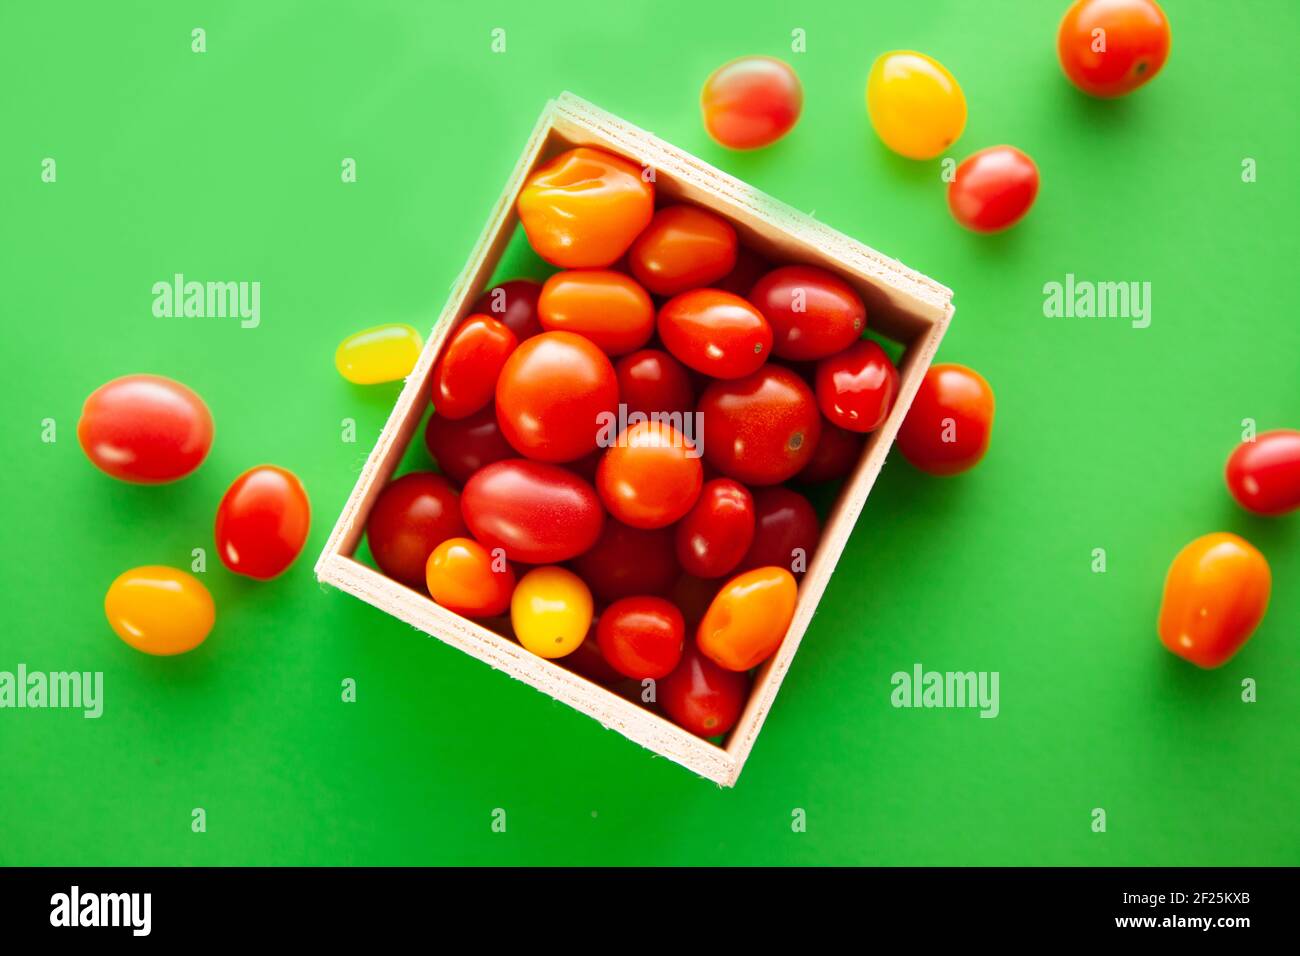 Scatola di legno con pomodori ciliegini freschi. Pomodori ciliegini rossi, arancioni e gialli su sfondo verde Foto Stock